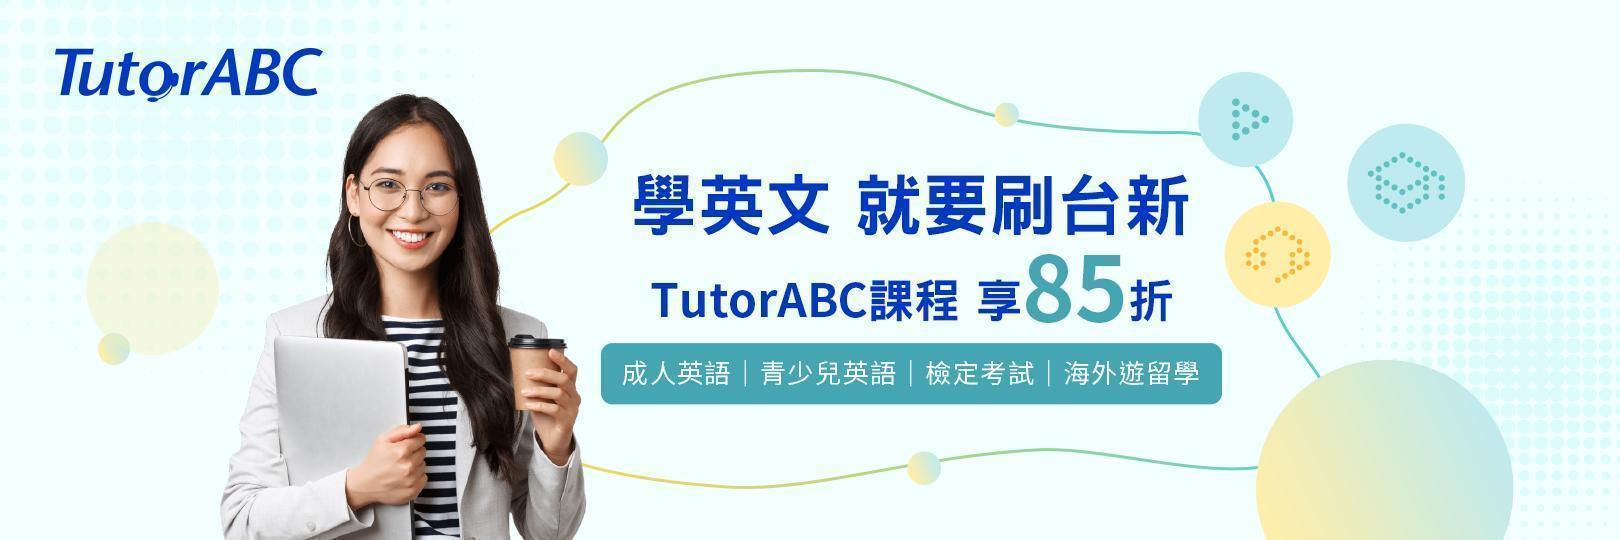 學英文 就要刷台新 TutorABC課程 享85折